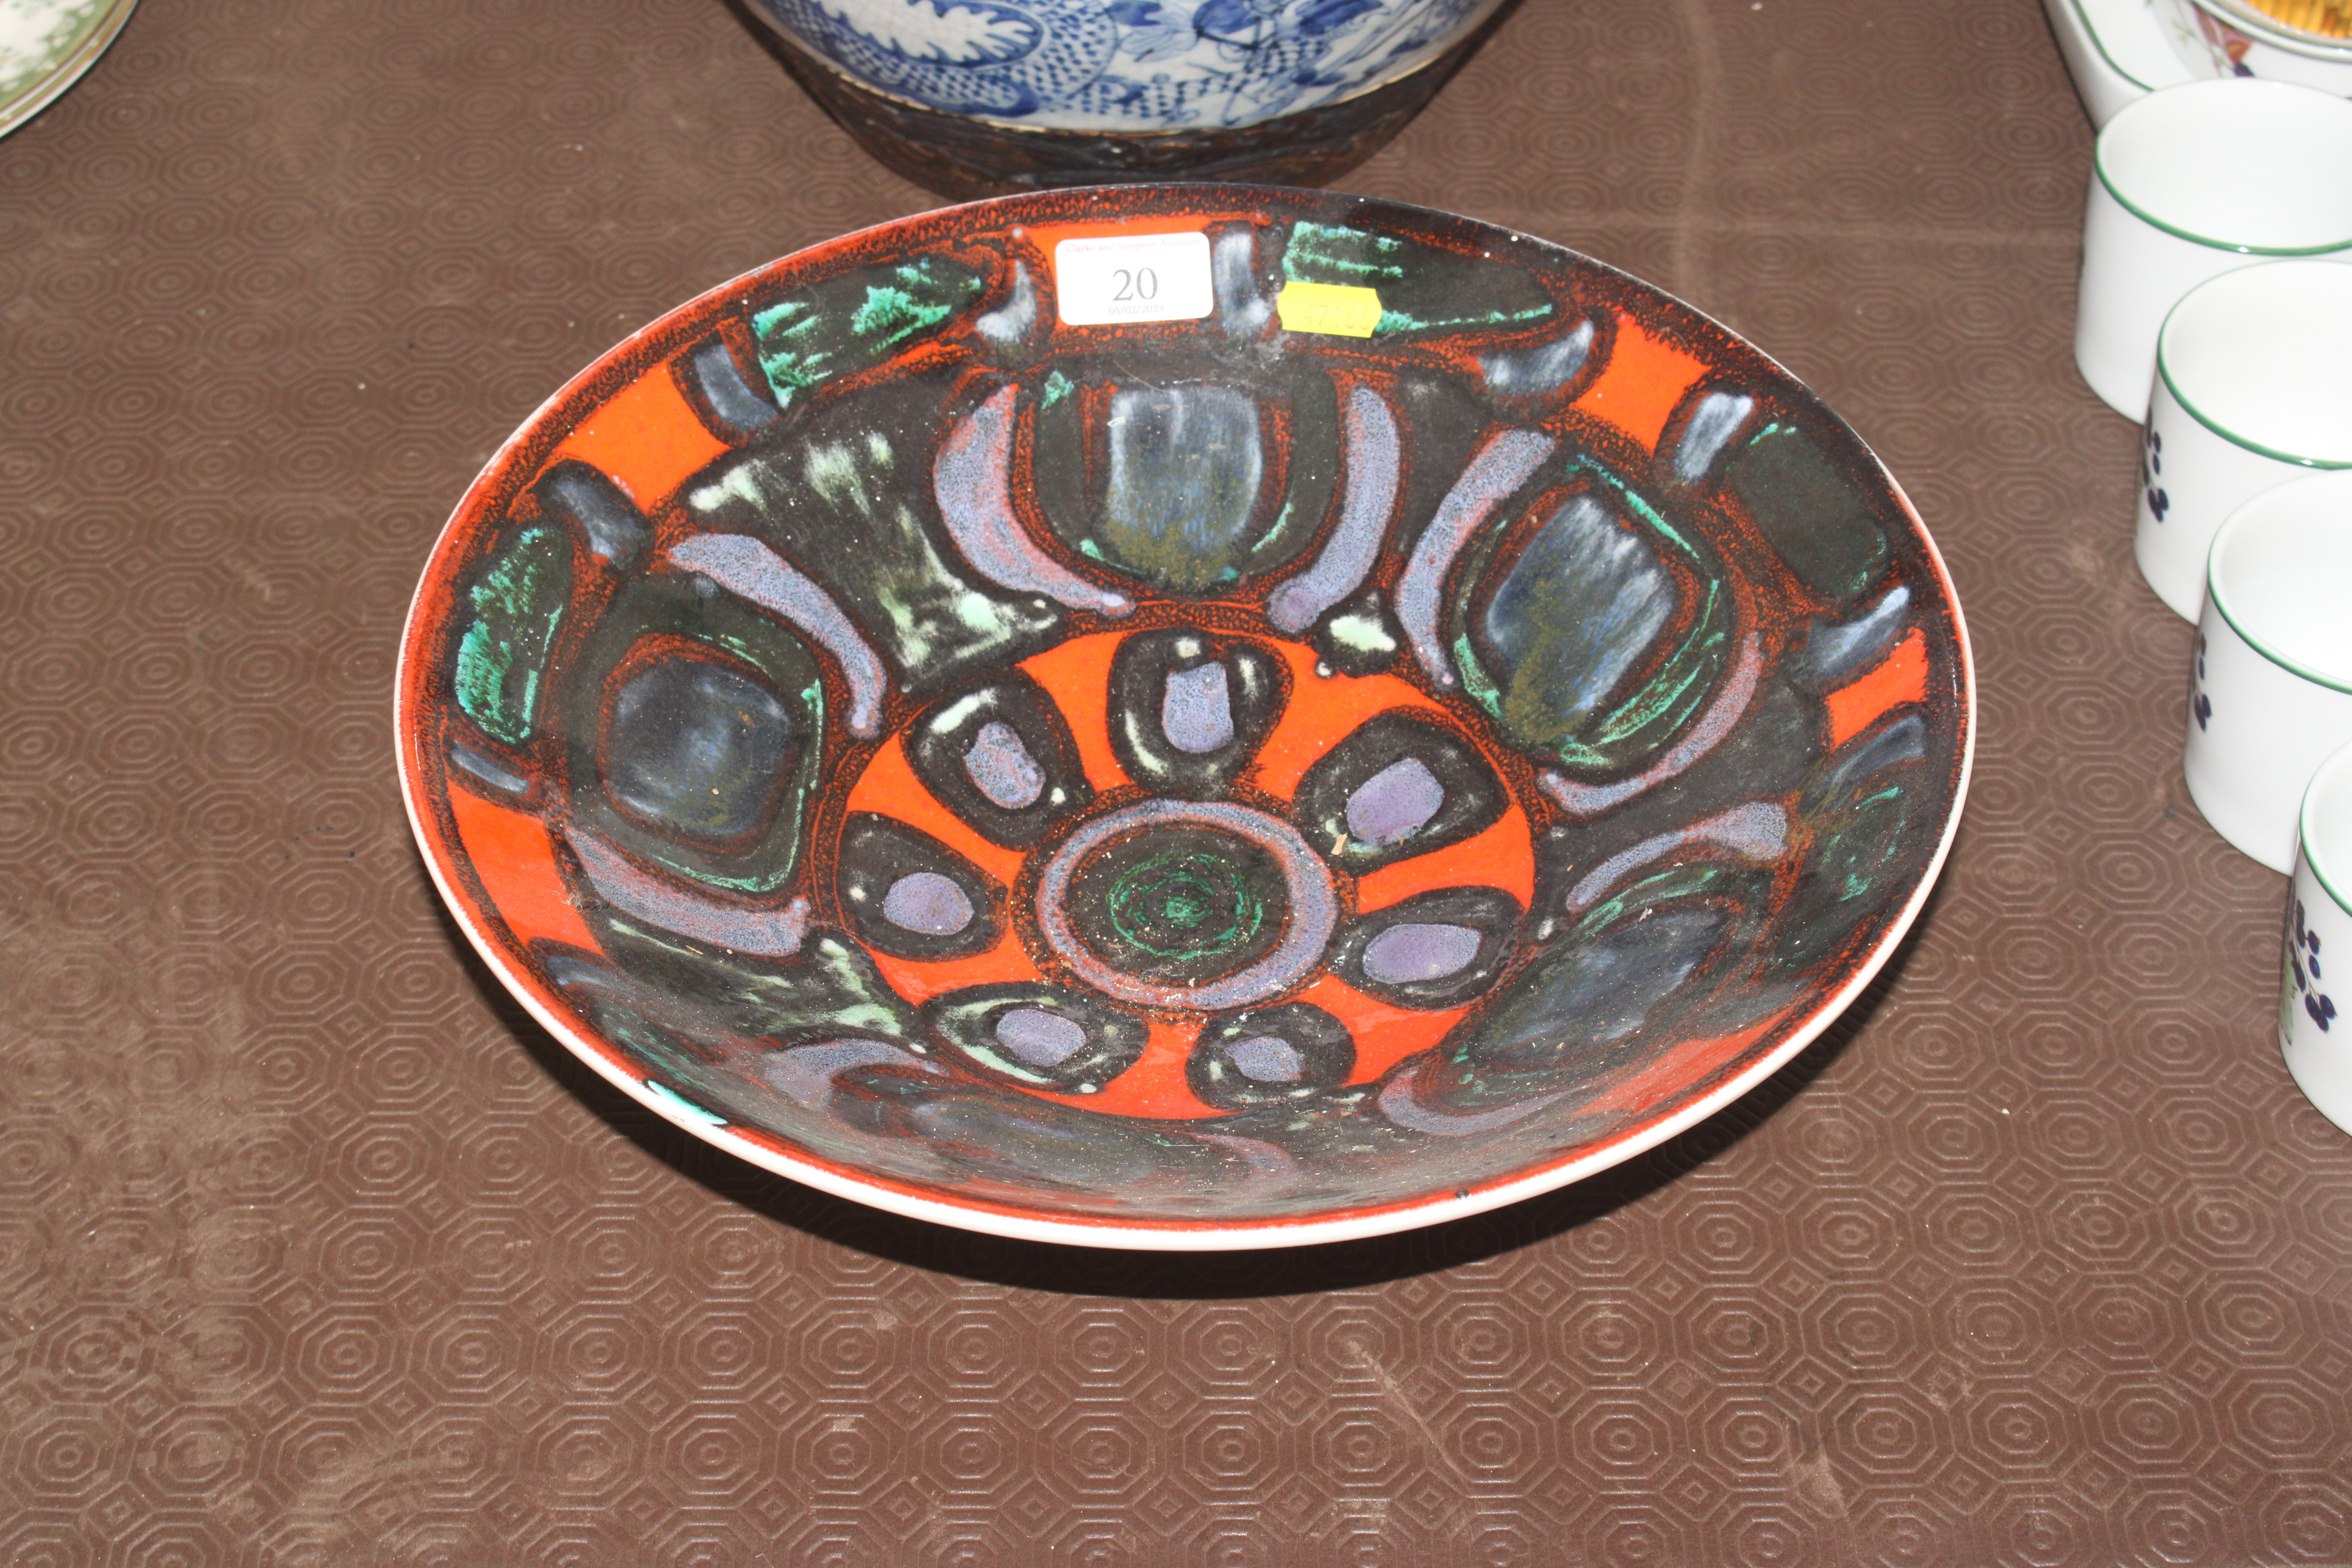 A Poole pottery Delphis bowl, 34cm diameter